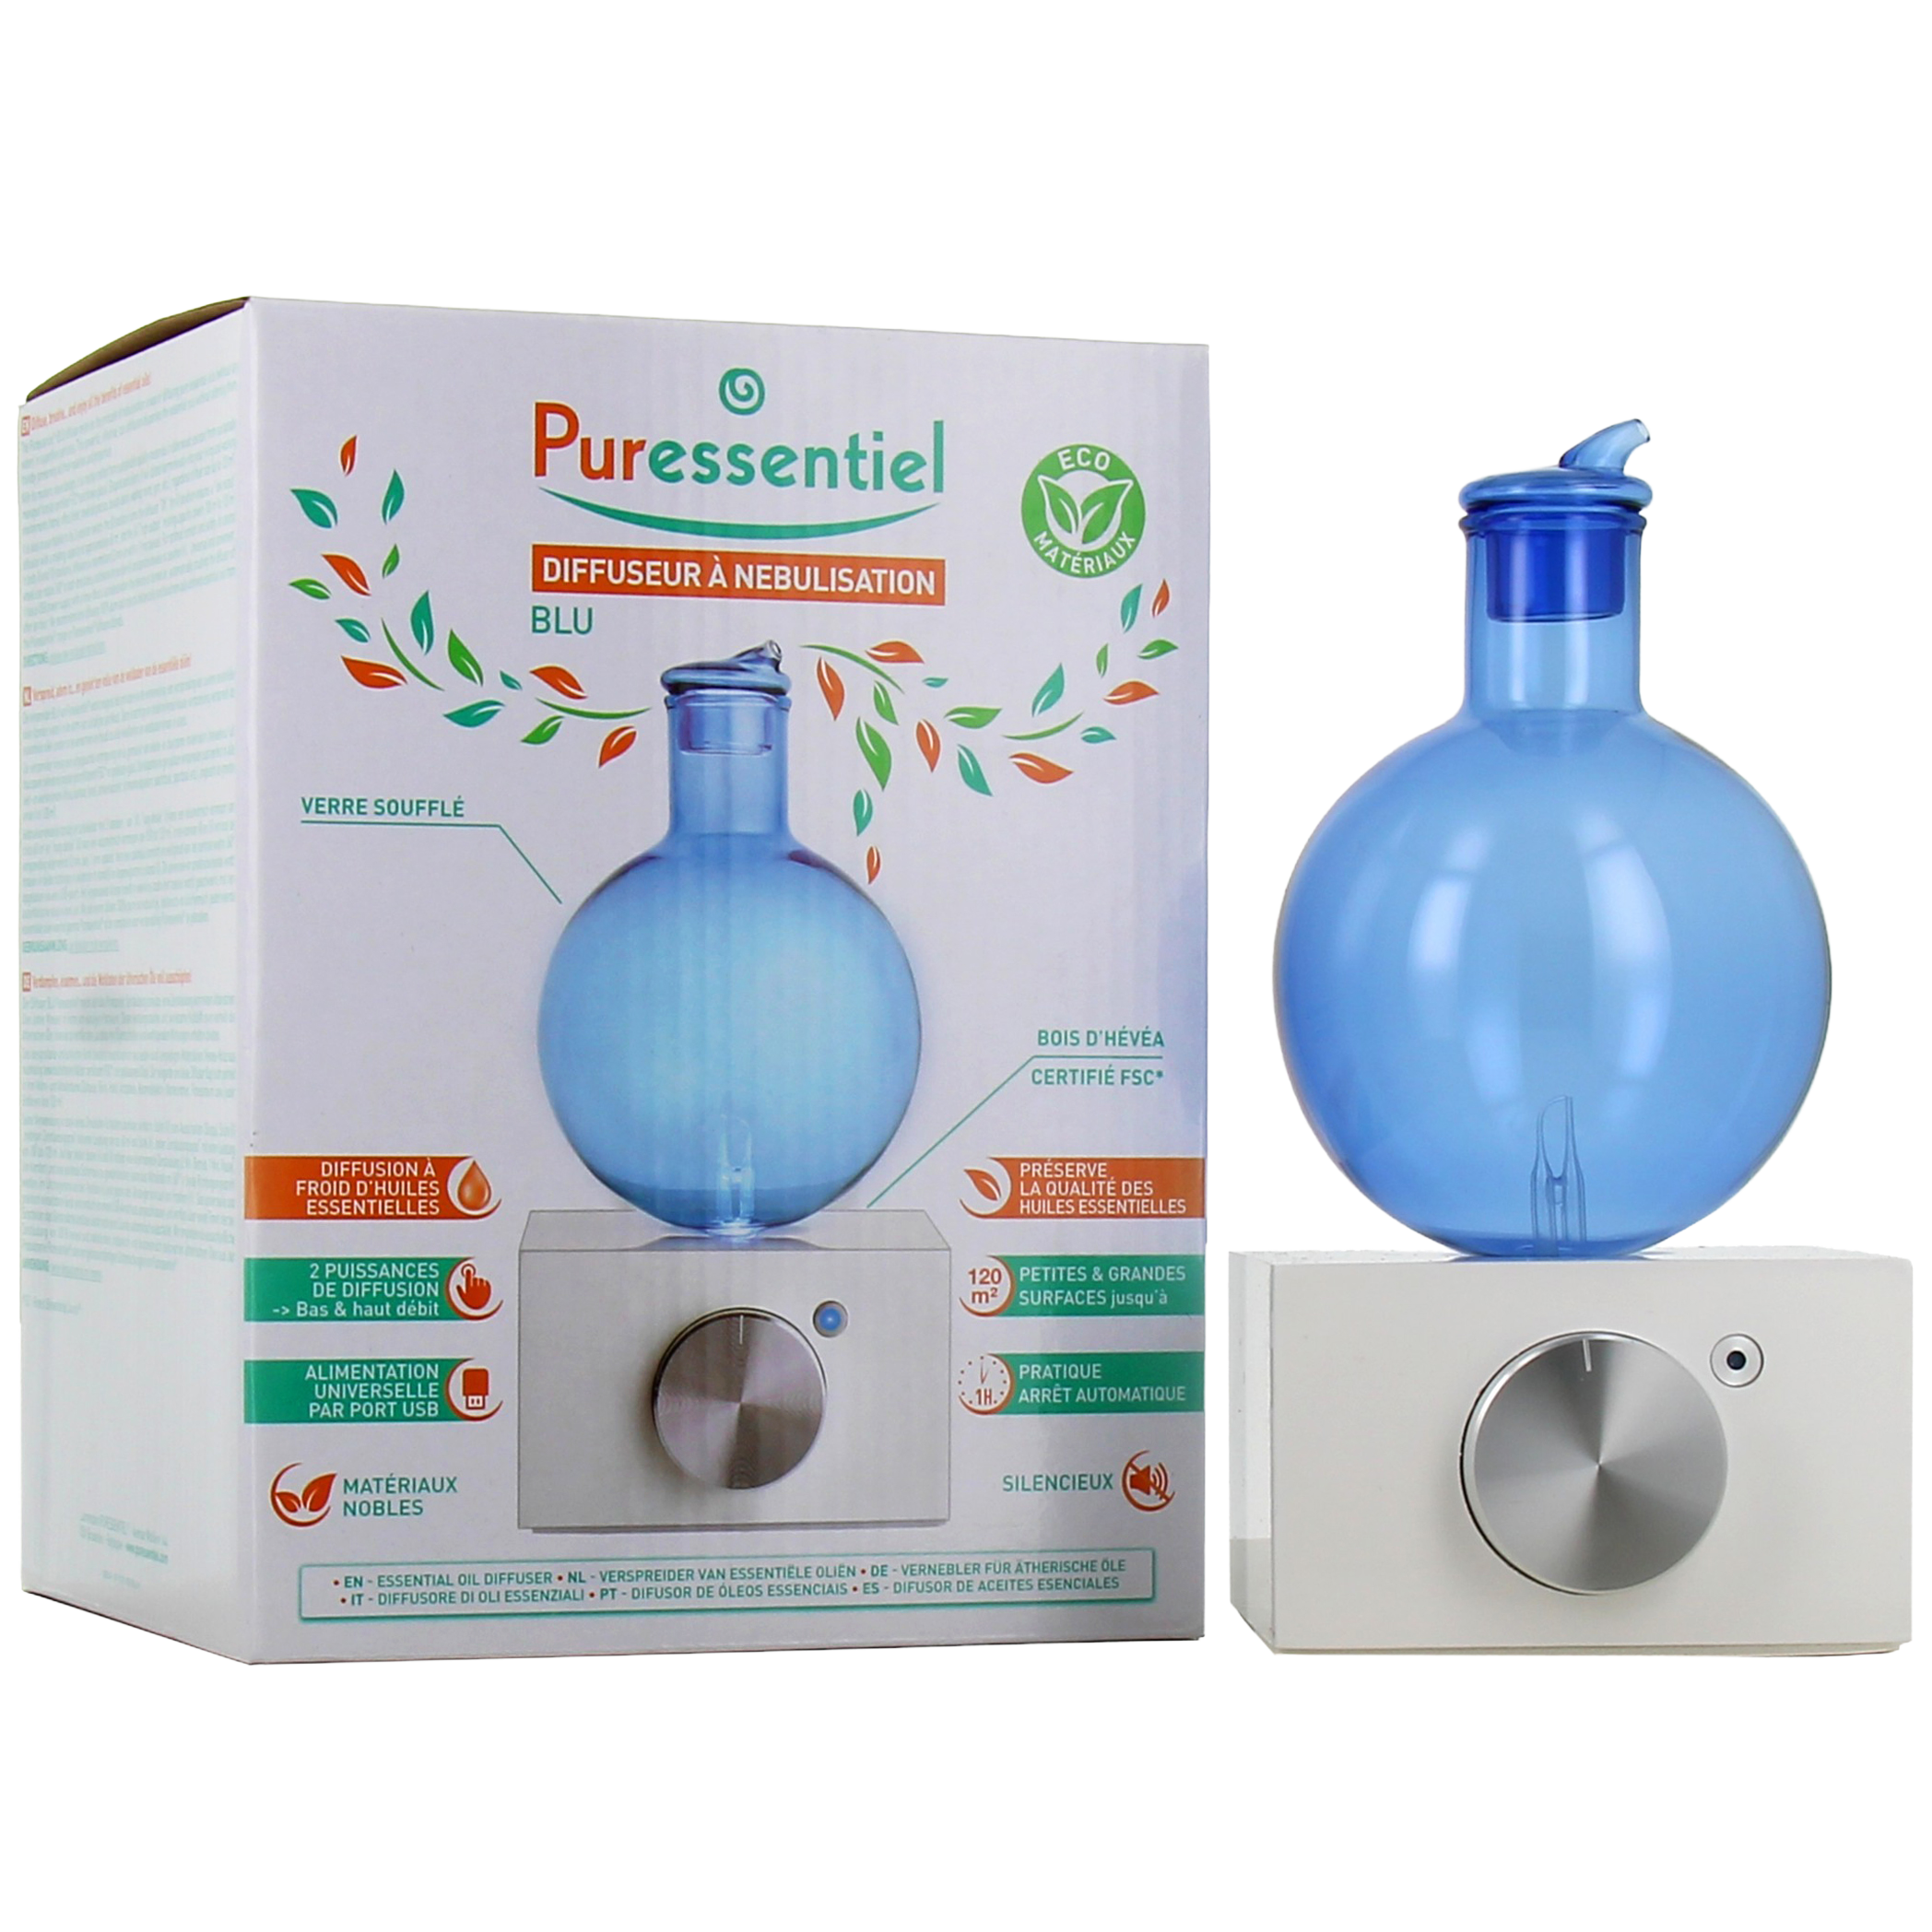 Puressentiel Blu diffuseur à nébulisation pour huiles essentielles